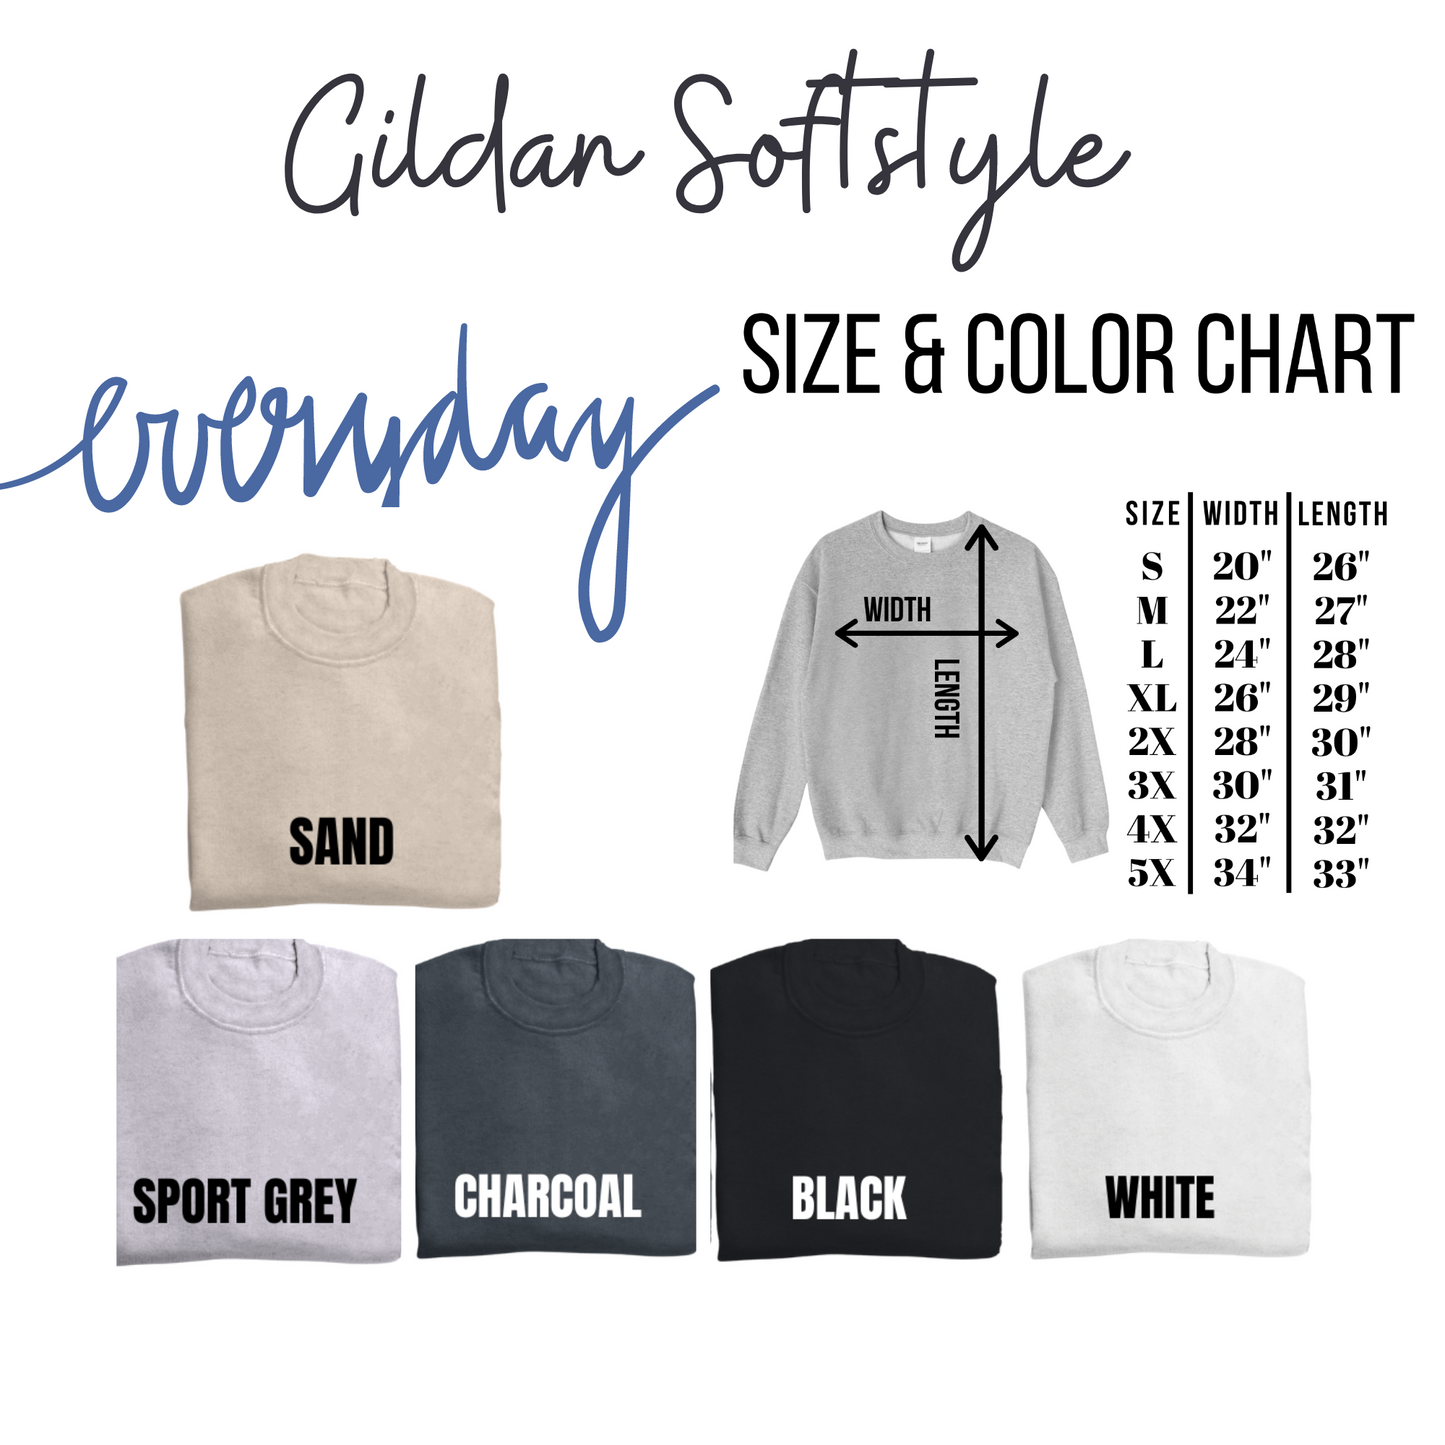 Feeling Lucky Gildan Softstyle Tshirt or Sweatshirt